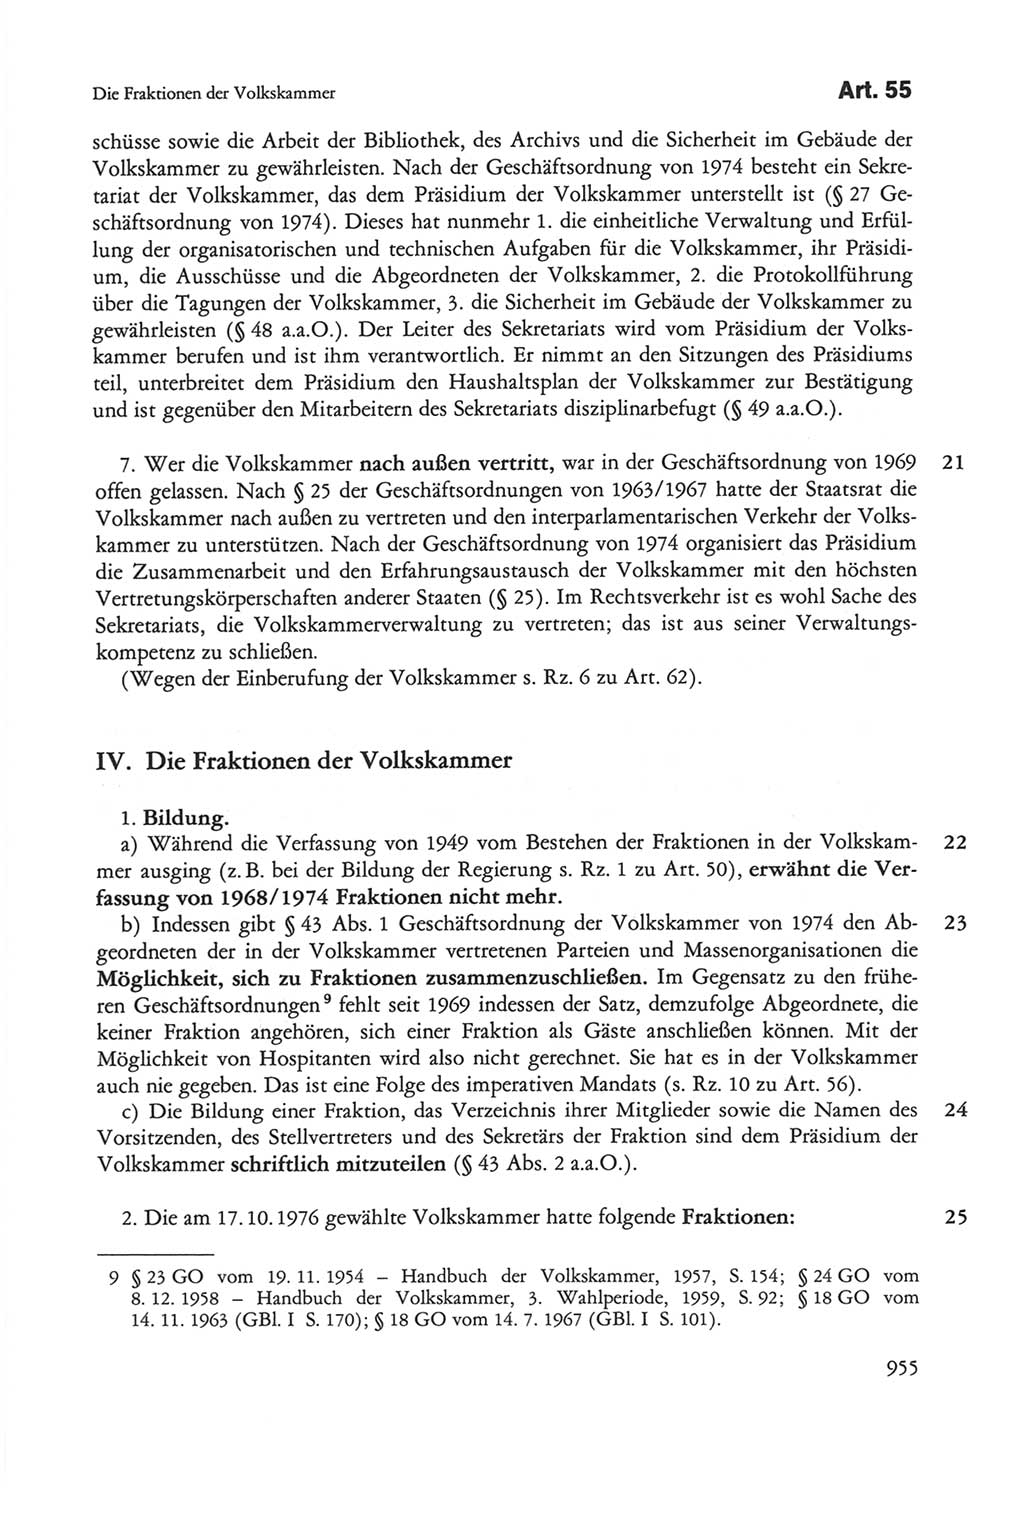 Die sozialistische Verfassung der Deutschen Demokratischen Republik (DDR), Kommentar mit einem Nachtrag 1997, Seite 955 (Soz. Verf. DDR Komm. Nachtr. 1997, S. 955)